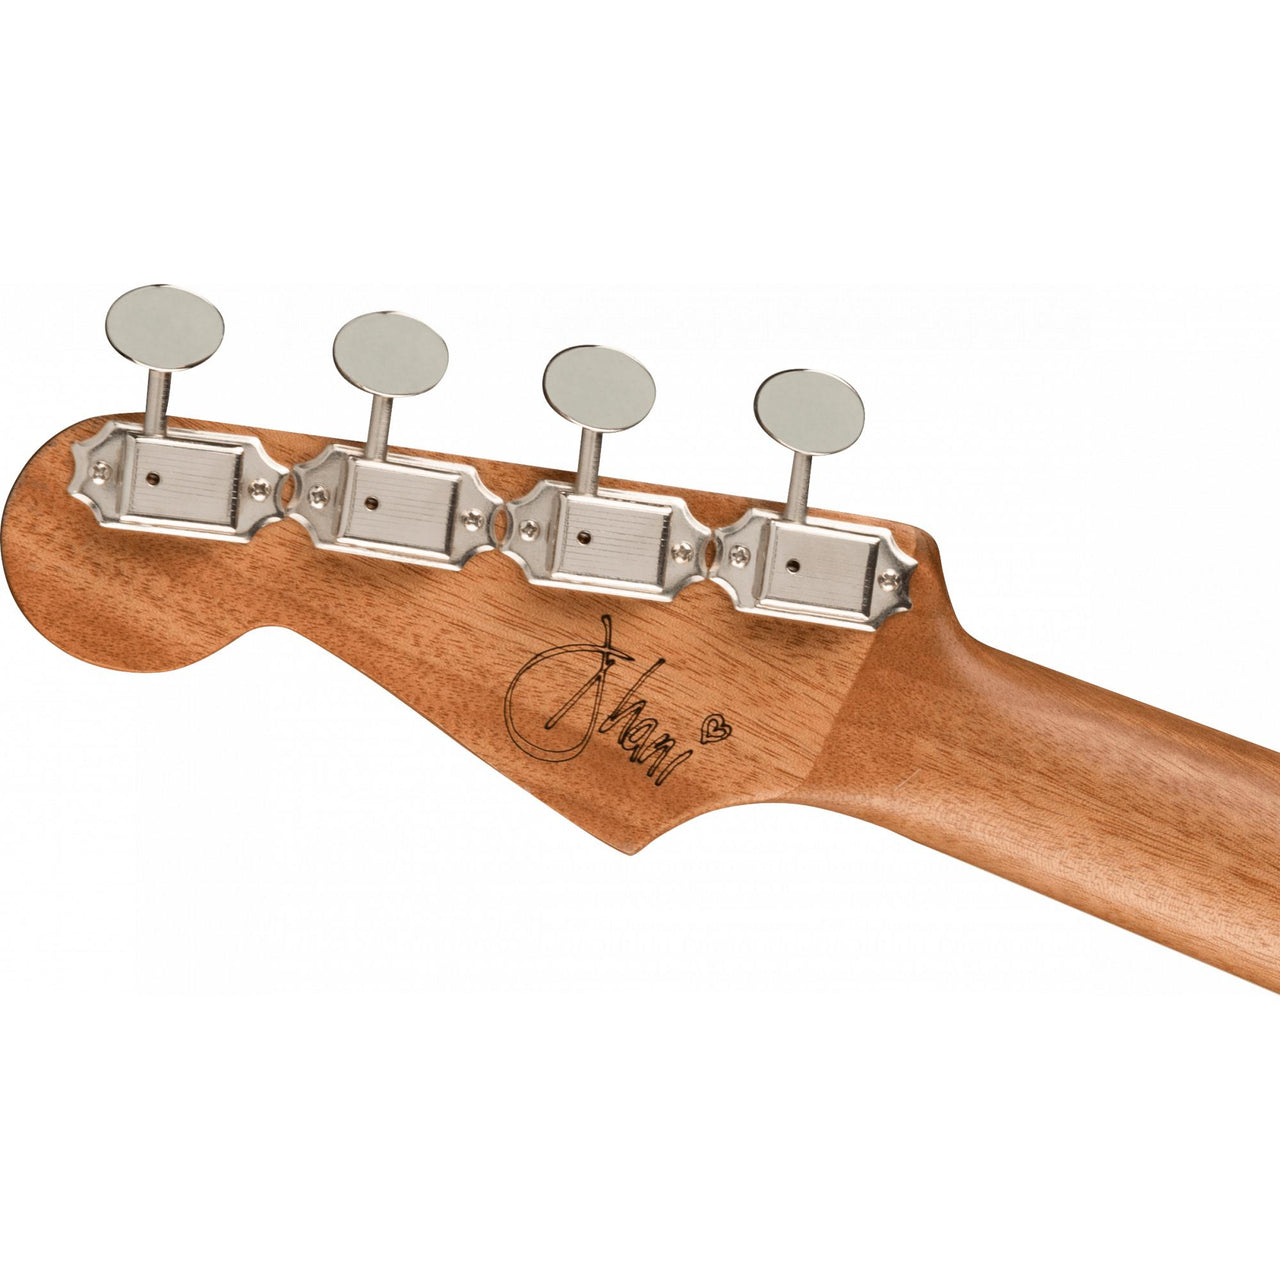 Ukulele Fender Dhani Harrison Turquoise 0971752197